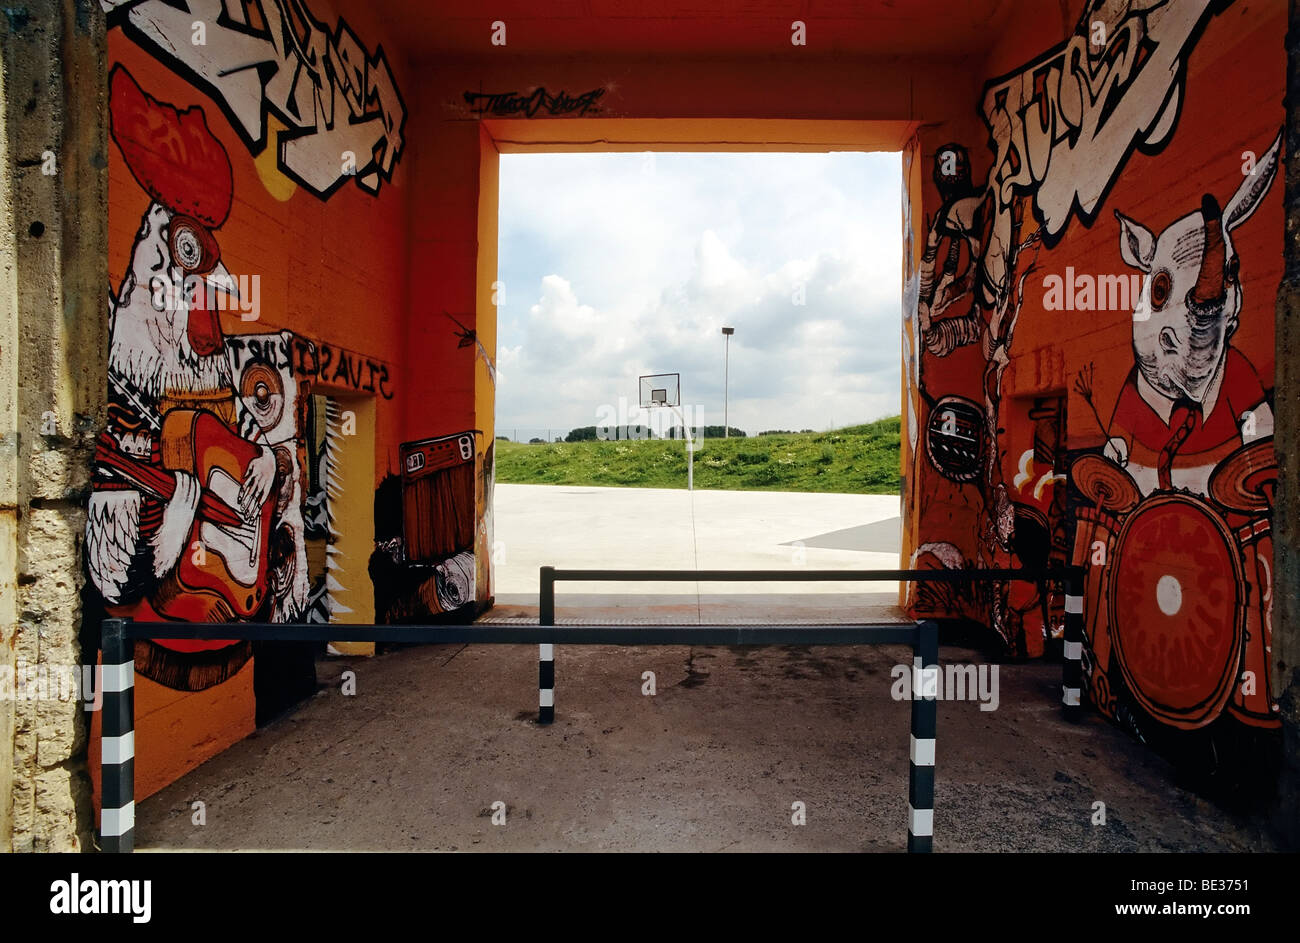 Ingresso al parco skate con graffiti, arte di strada, Rheinpark Duisburg-Hochfeld, la zona della Ruhr, Renania settentrionale-Vestfalia, Germania, Foto Stock